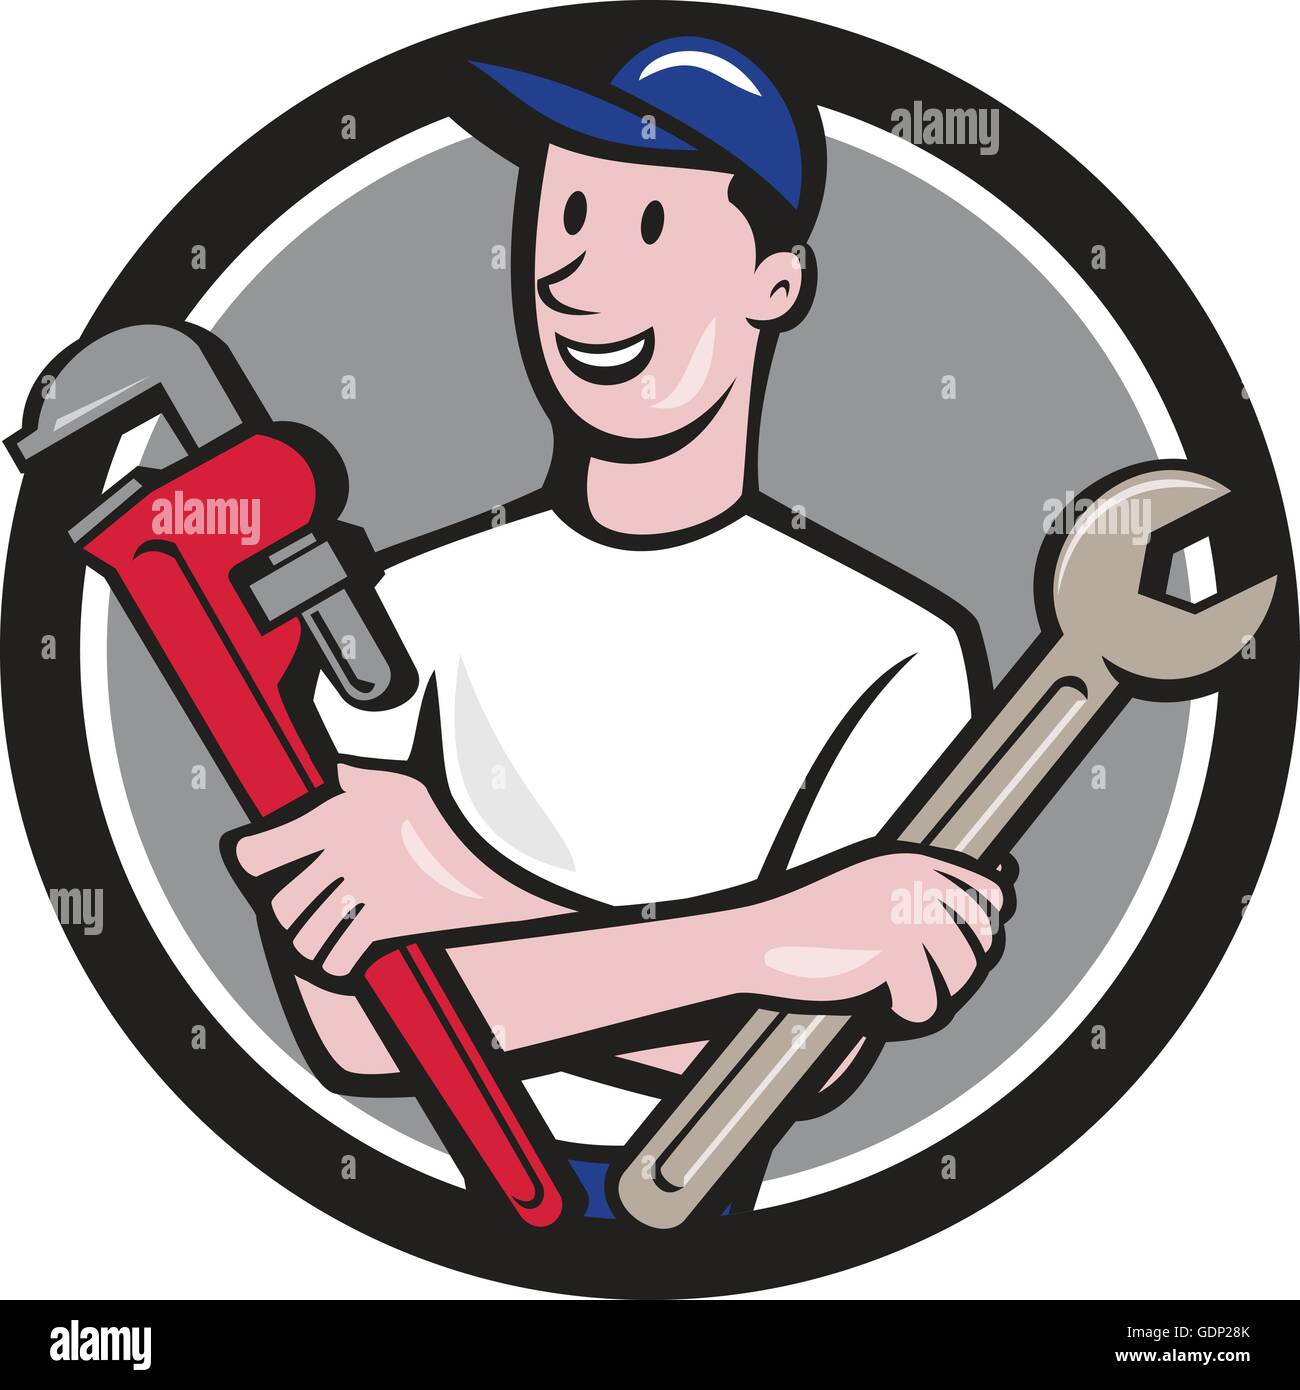 Abbildung eines Handwerker Handwerker Arbeitnehmers Hut mit Schraubenschlüssel und Schraubenschlüssel, Blick auf die Seite, von vorne gesehen Stock Vektor